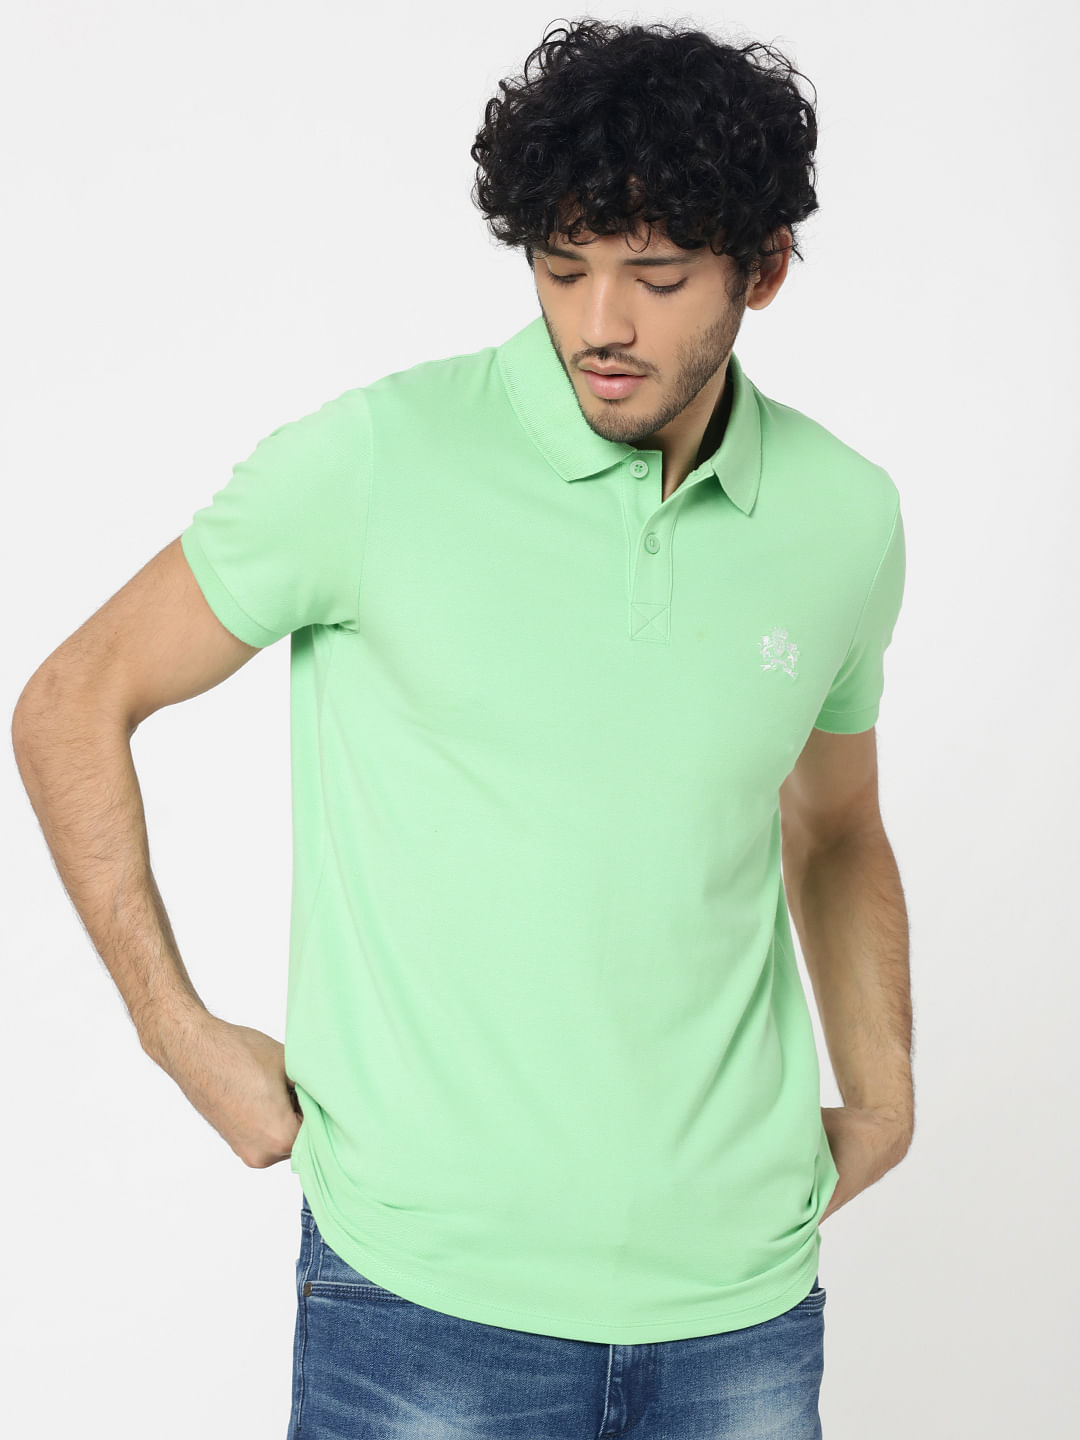 light green shirt mens